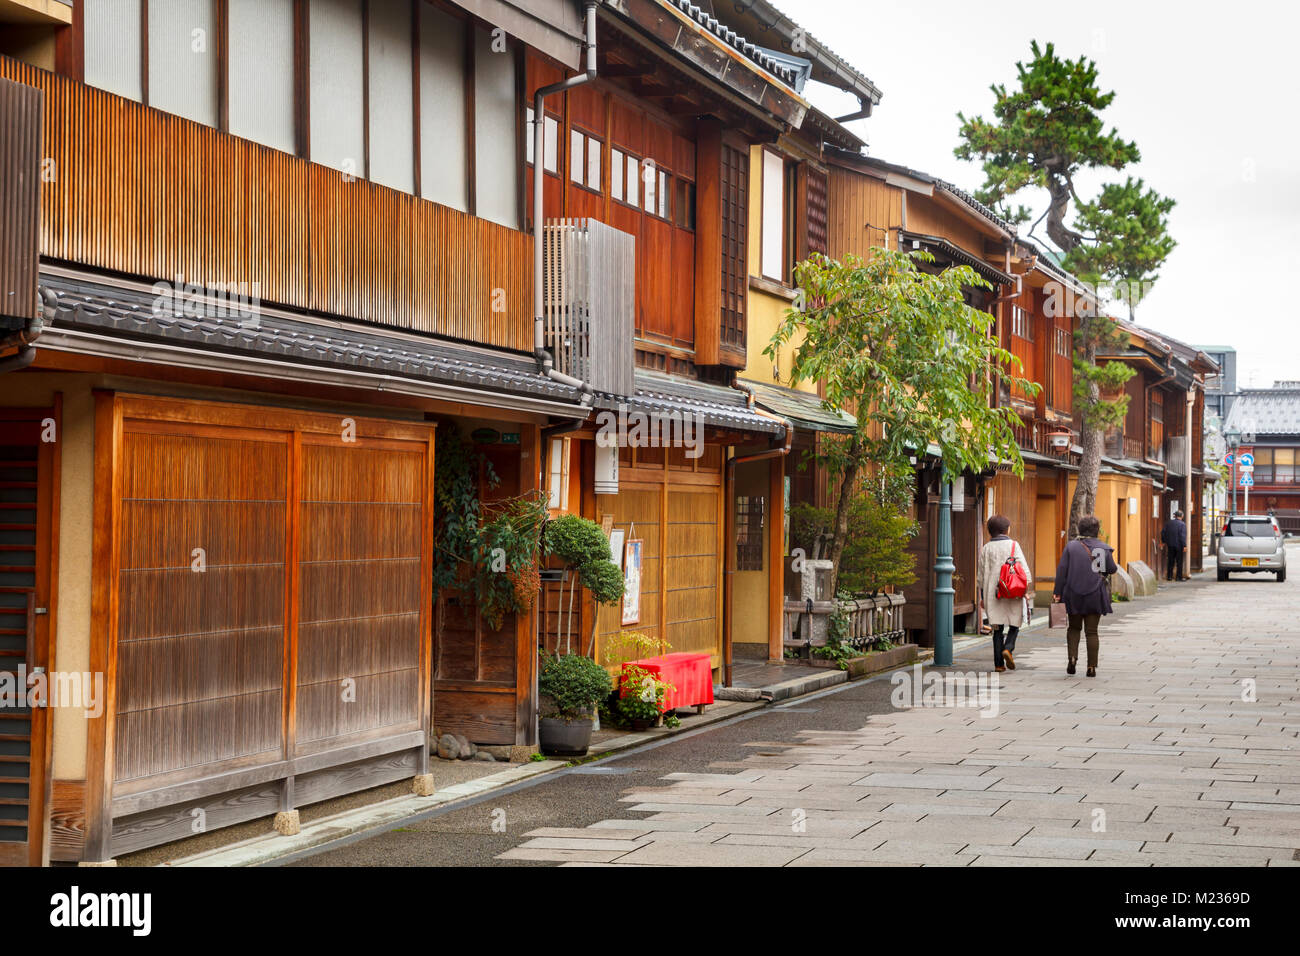 Nishi Chaya Bezirk Straßen, einem traditionellen japanischen Stil Viertel mit Holzhäusern in Kanazawa, Japan Stockfoto